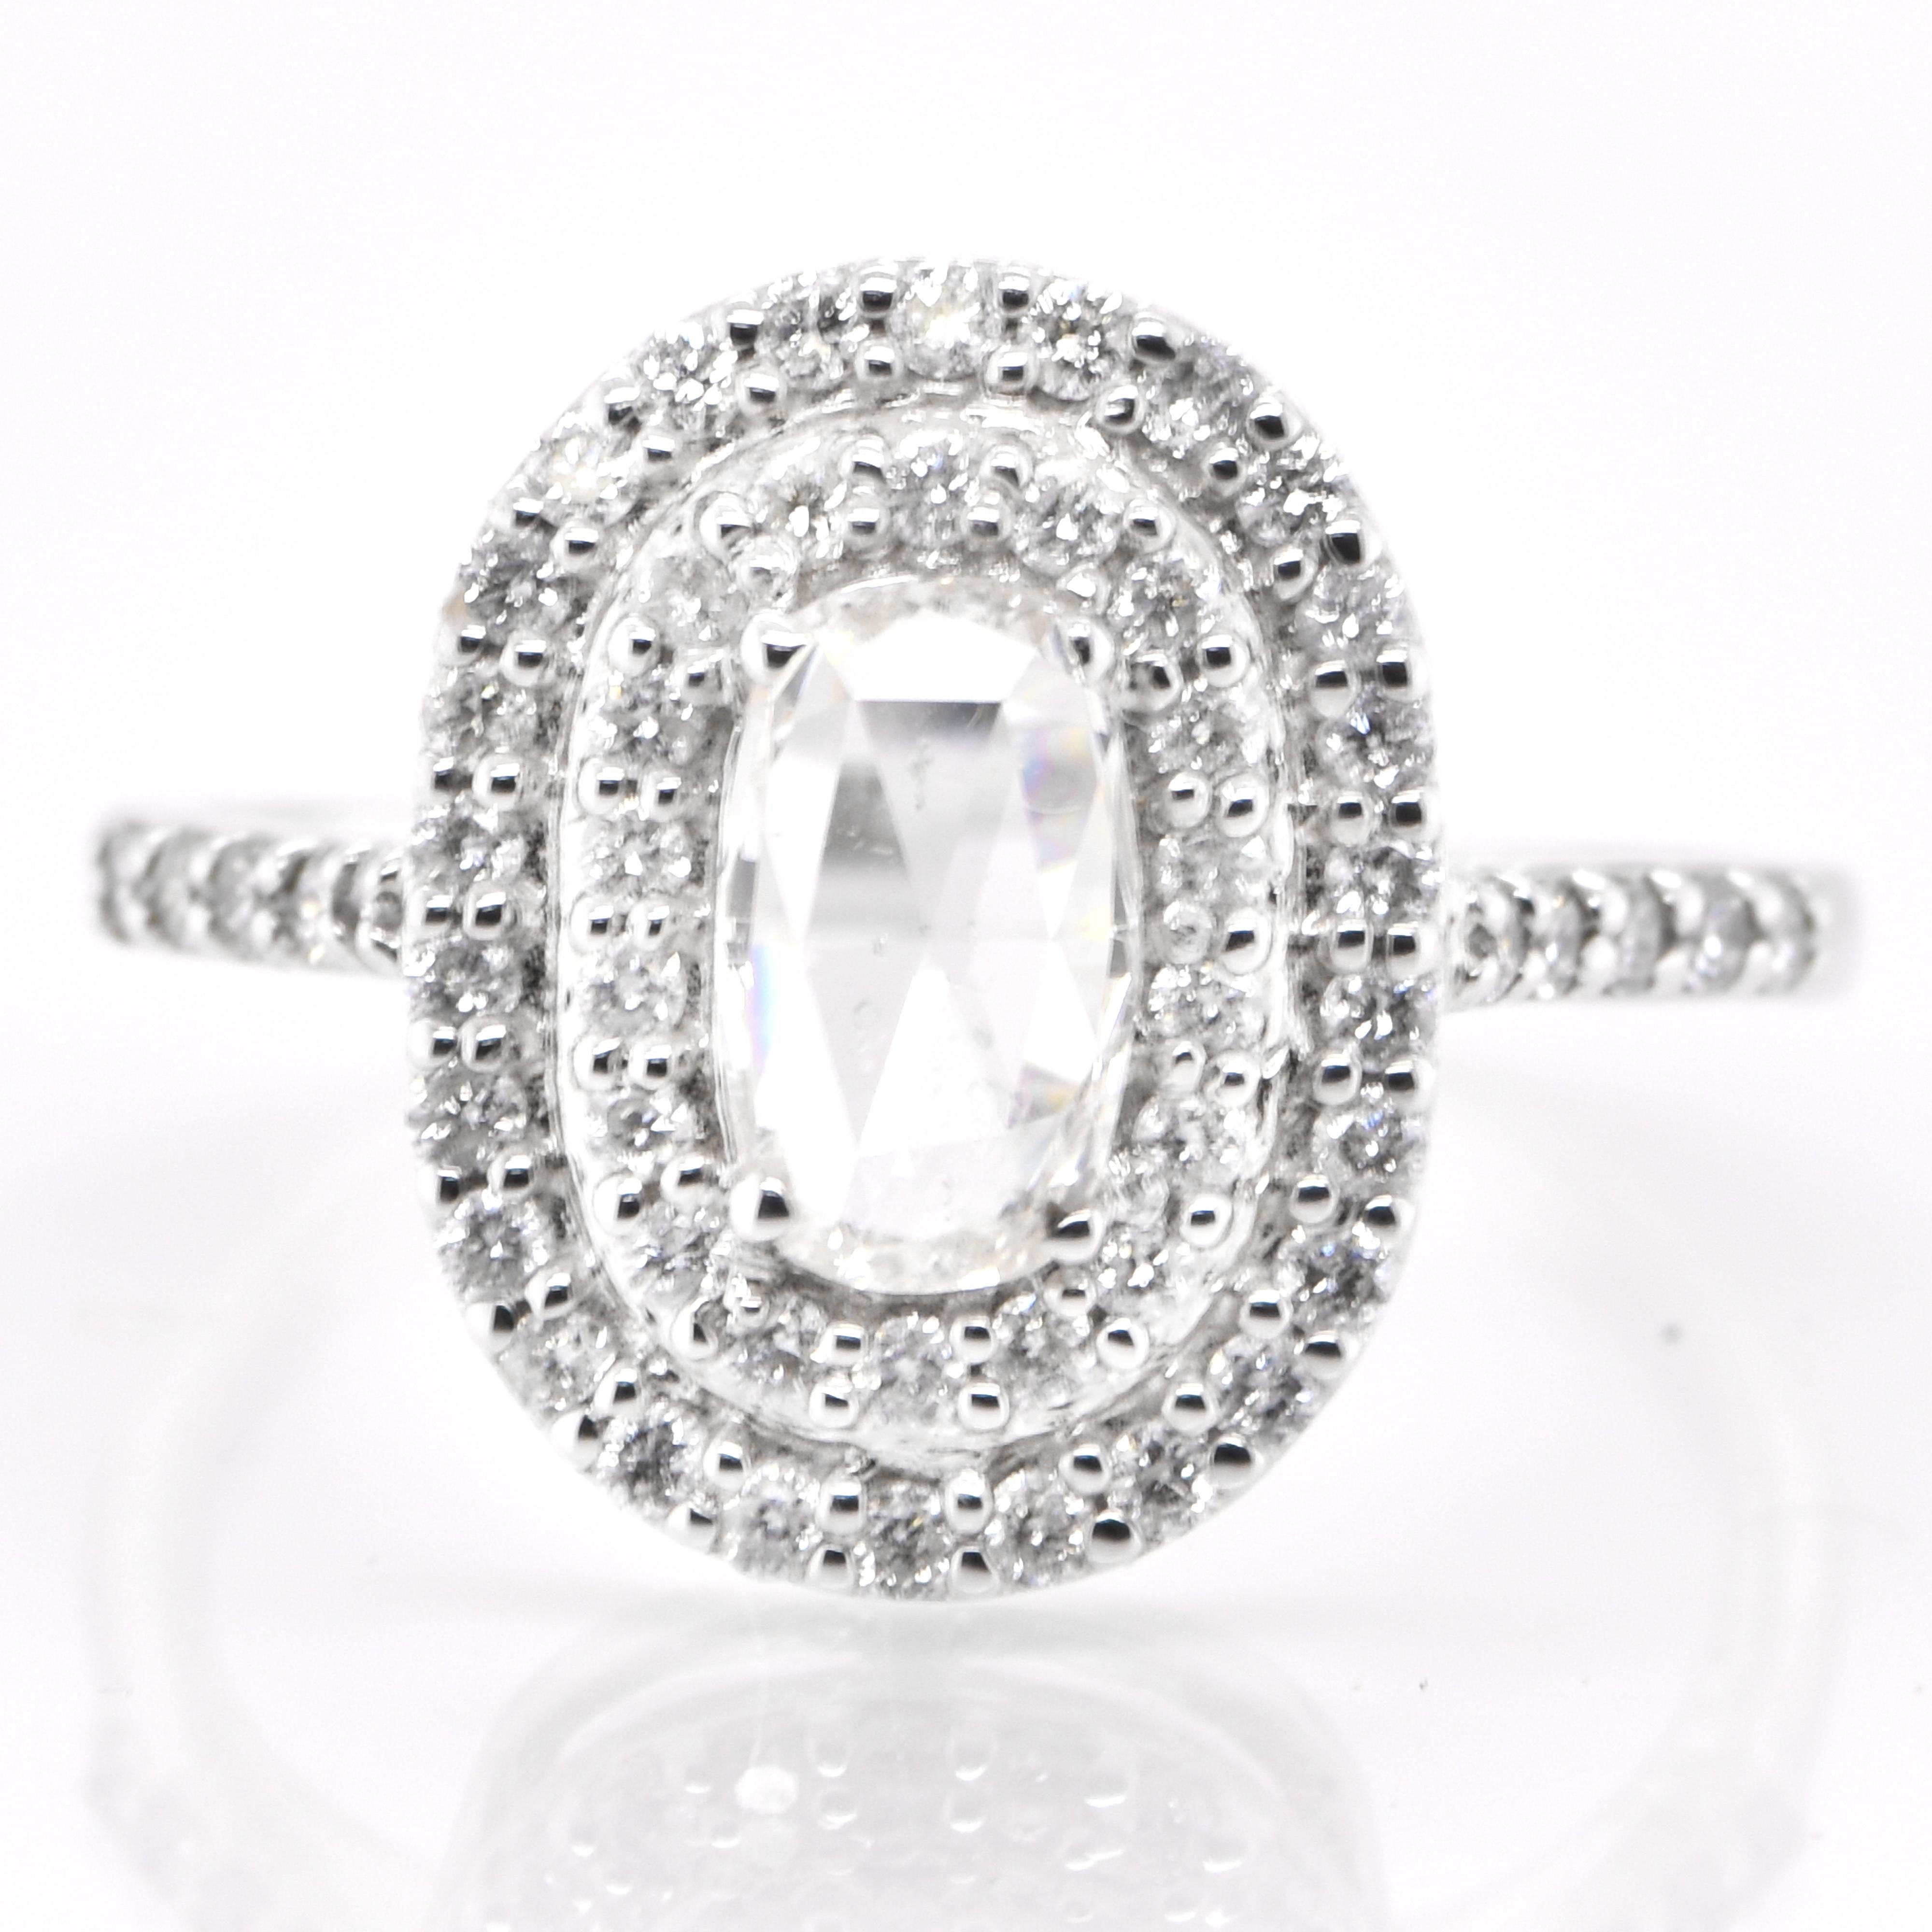 Une magnifique bague double halo comprenant un diamant naturel taille rose de 0,50 carat et des accents de diamant de 0,59 carat sertis en platine. Les diamants ont été parés et chéris tout au long de l'histoire de l'humanité et remontent à des